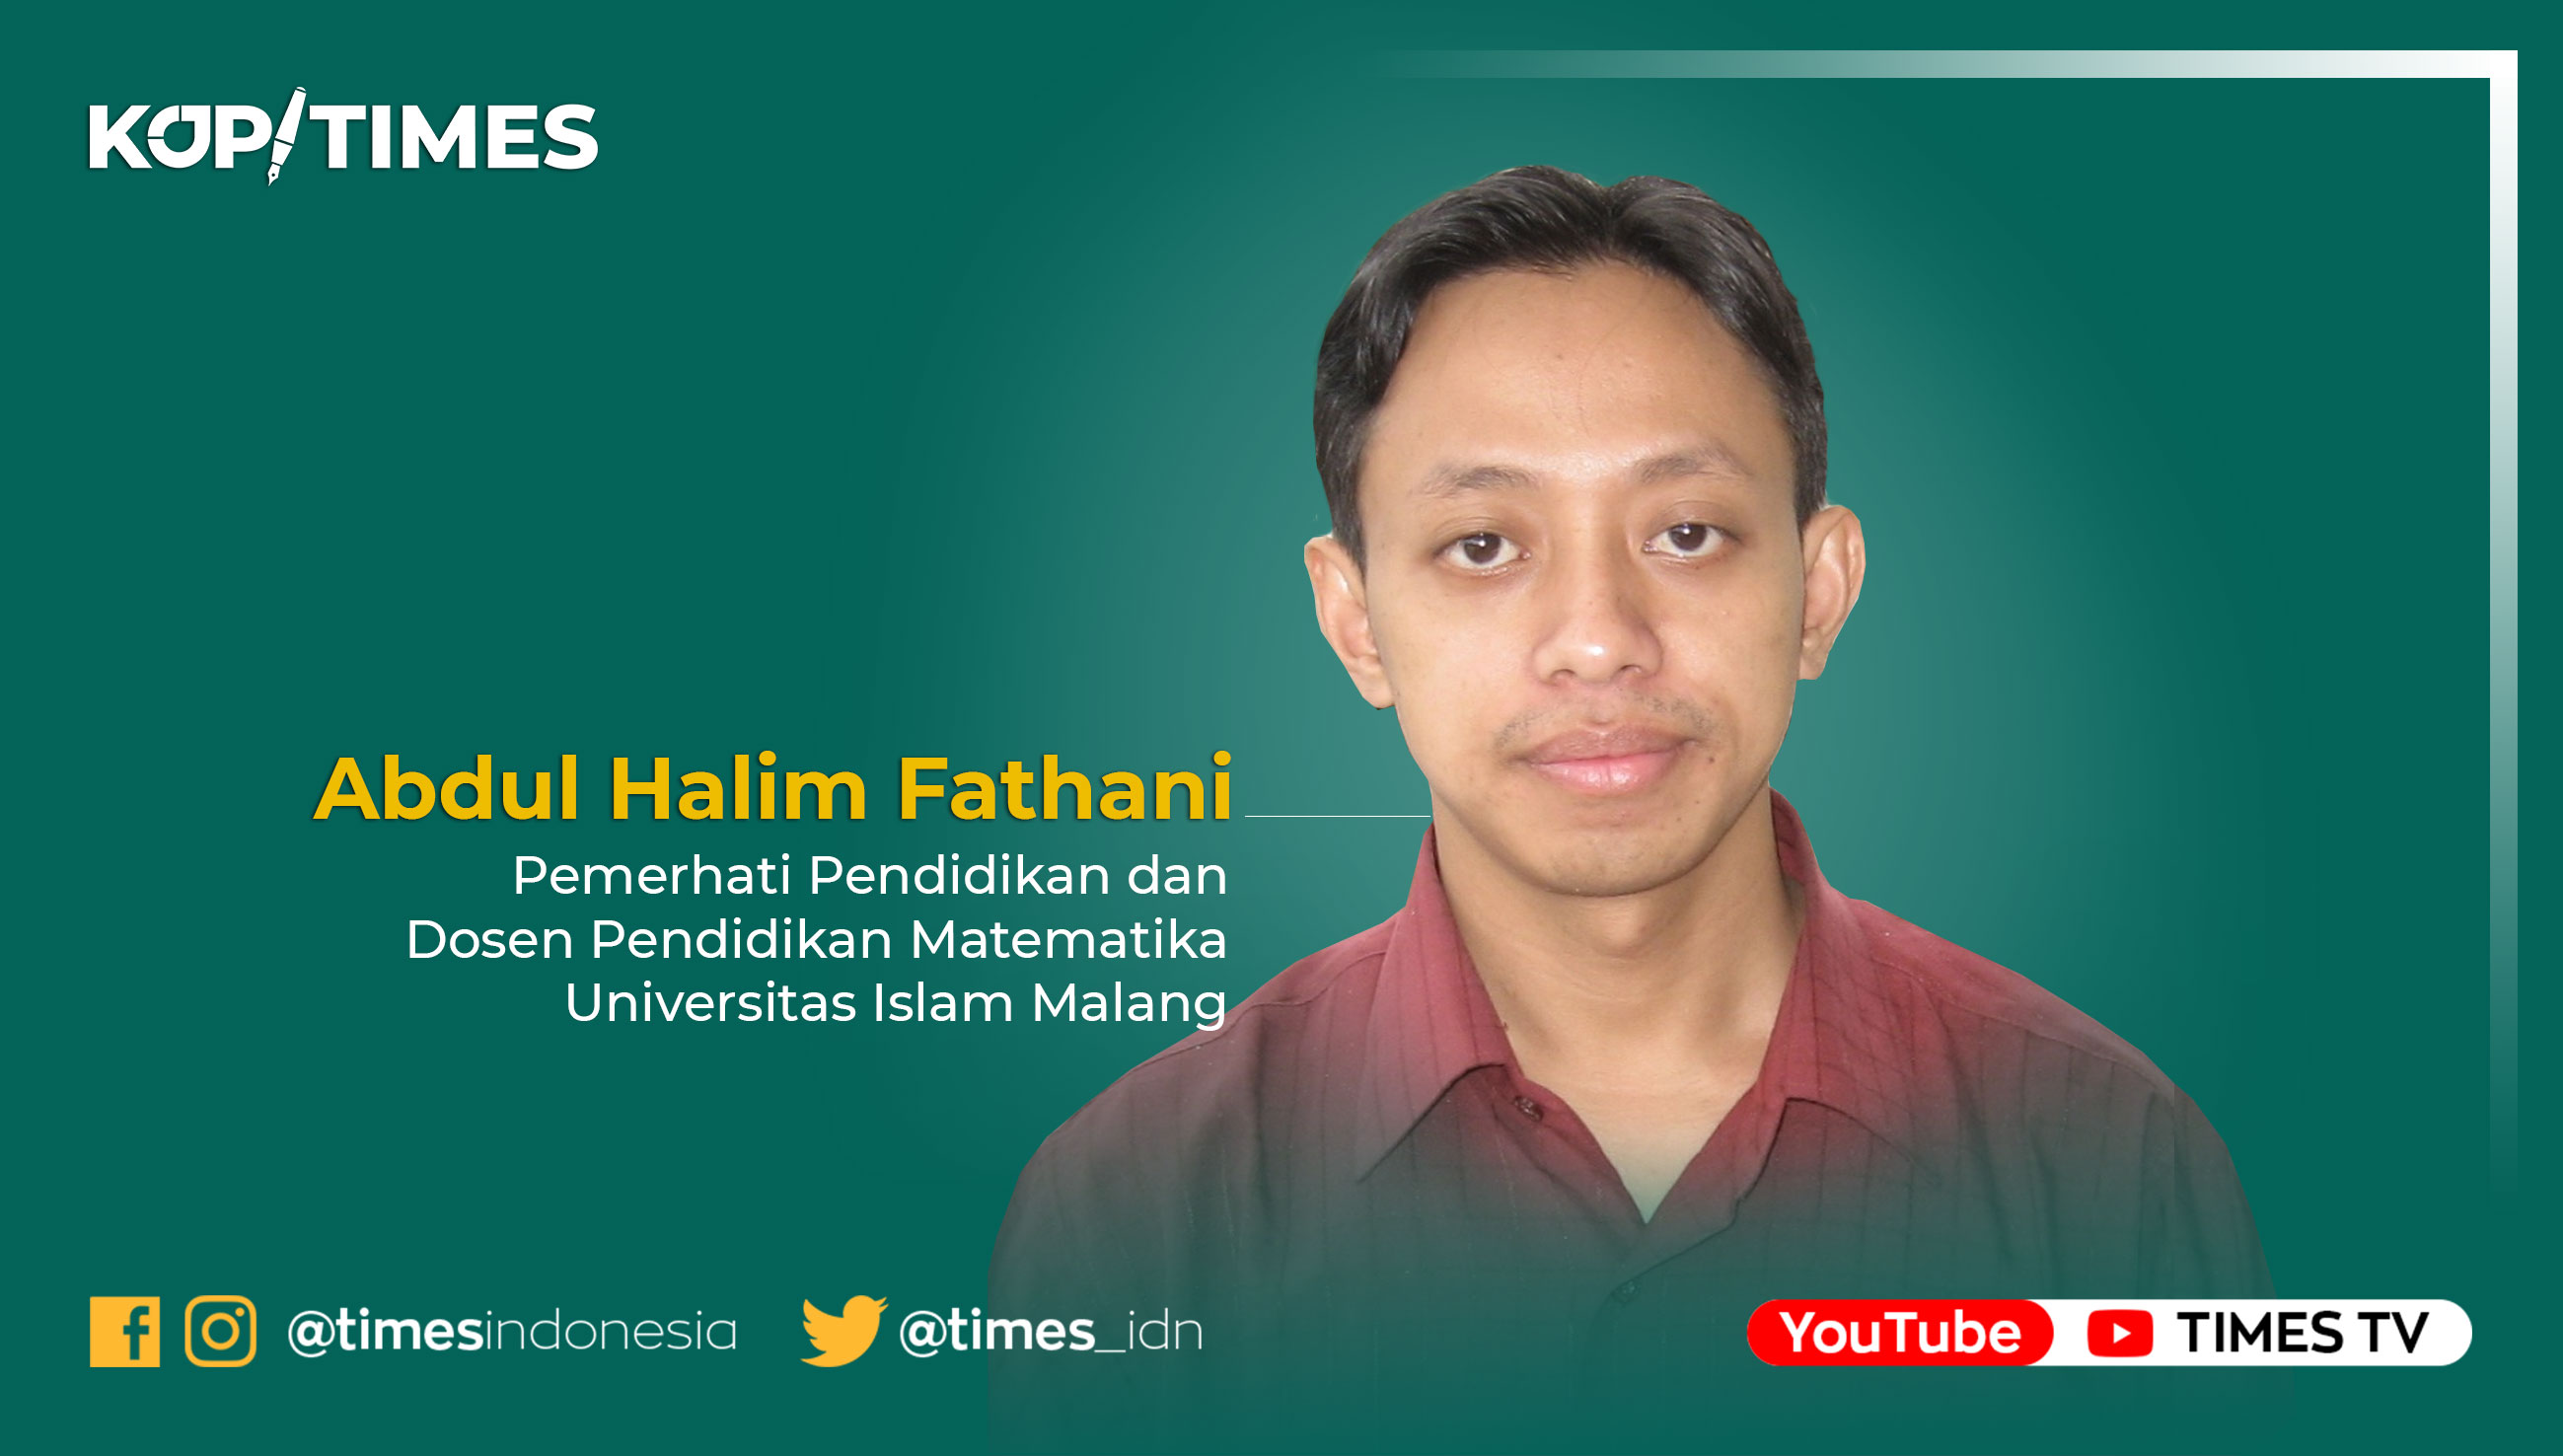 Abdul Halim Fathani, Pemerhati Pendidikan dan Dosen Pendidikan Matematika Universitas Islam Malang.